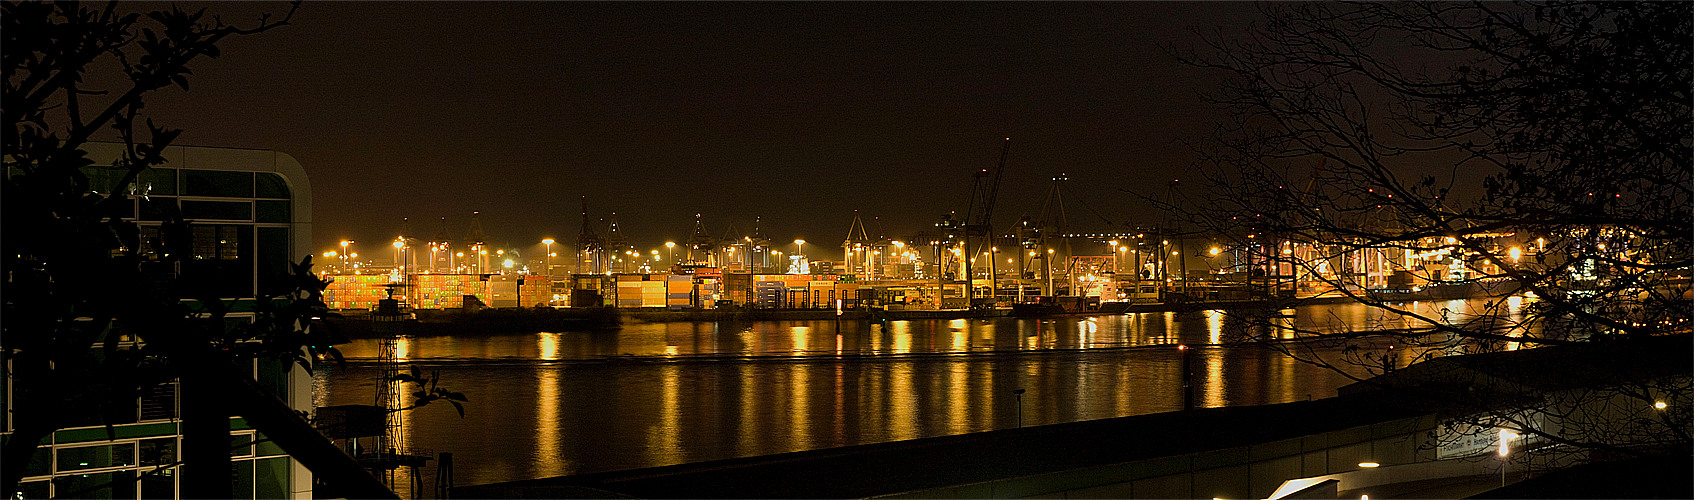 Hamburger Hafen von der Pailmaille fotografiert.